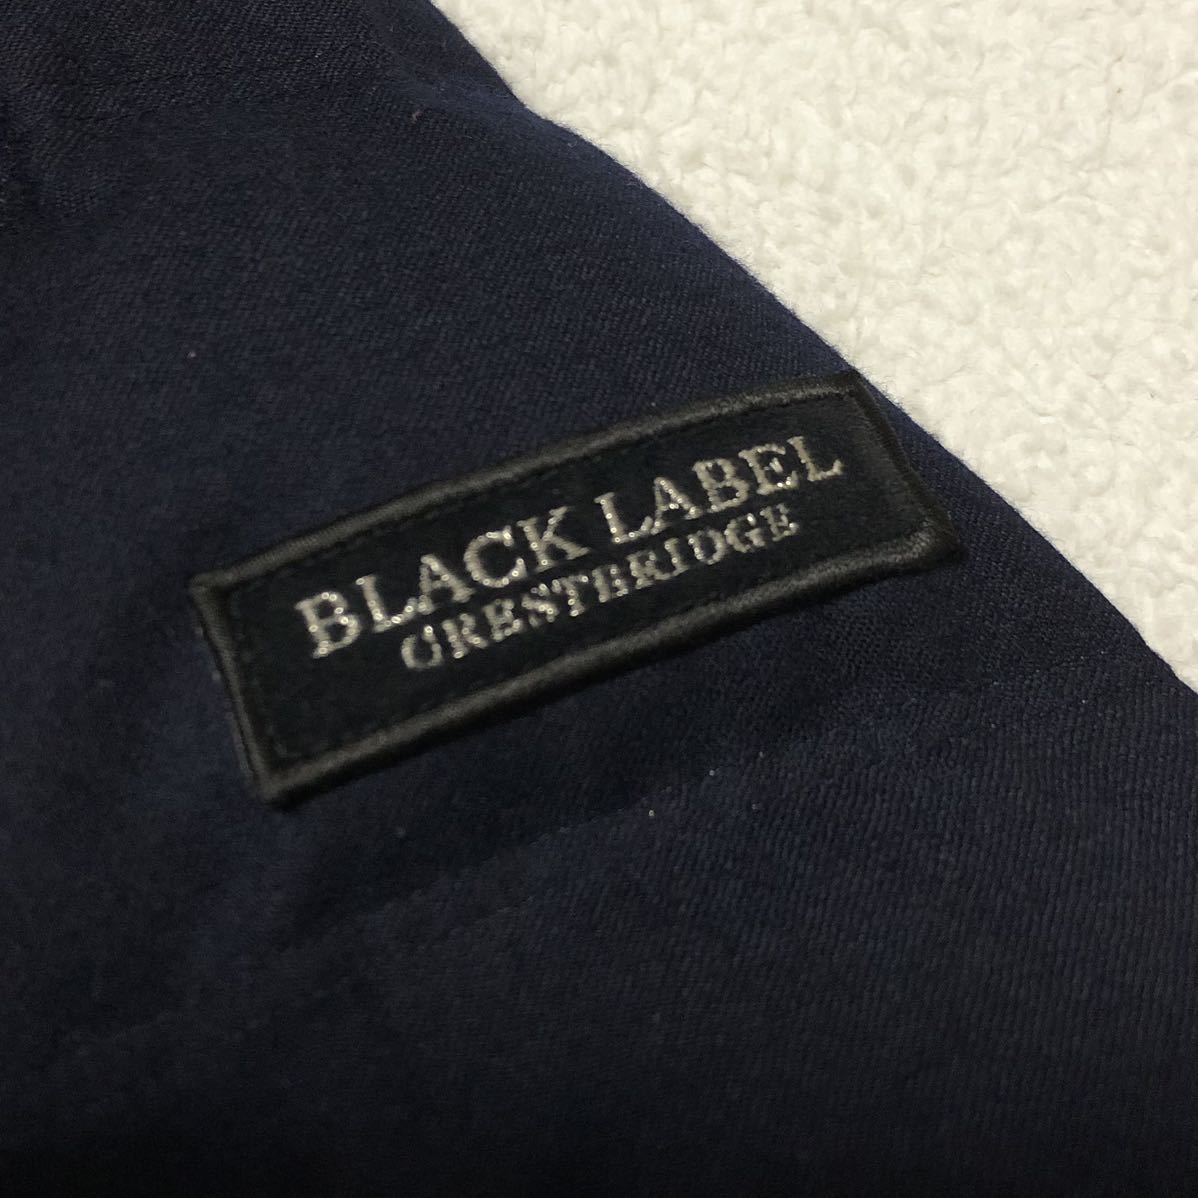 極美品 ブラックレーベルクレストブリッジ 2way ウール ダウンジャケット ベスト M イタリア製 カノニコ BLACKLABELCRESTBRIDGE アウター_画像7